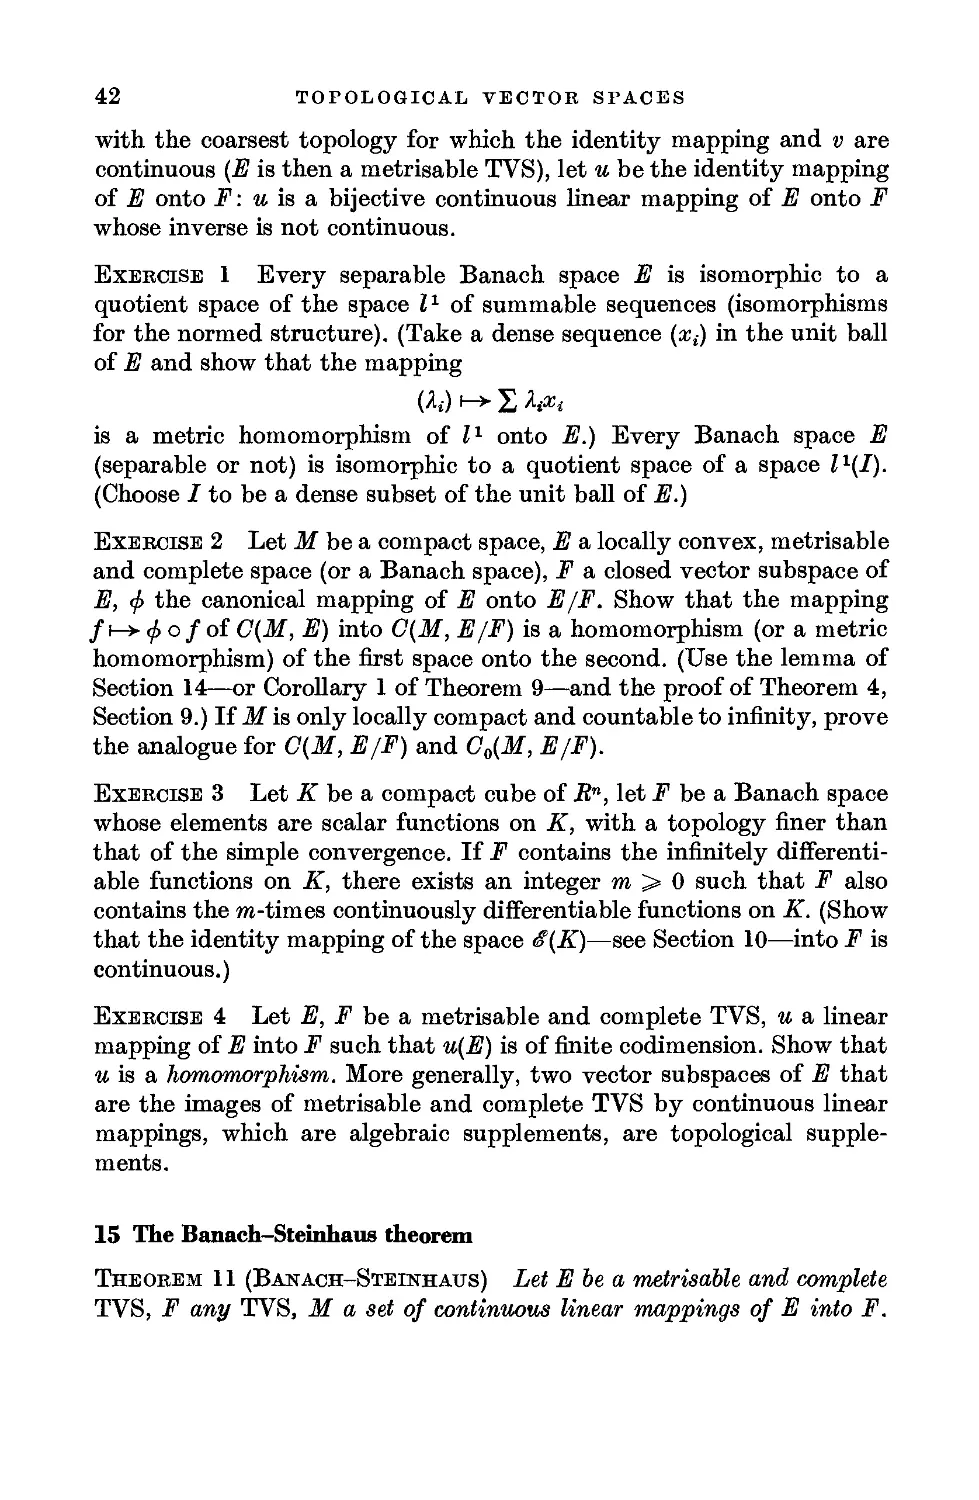 15. The Banach-Steinhaus theorem